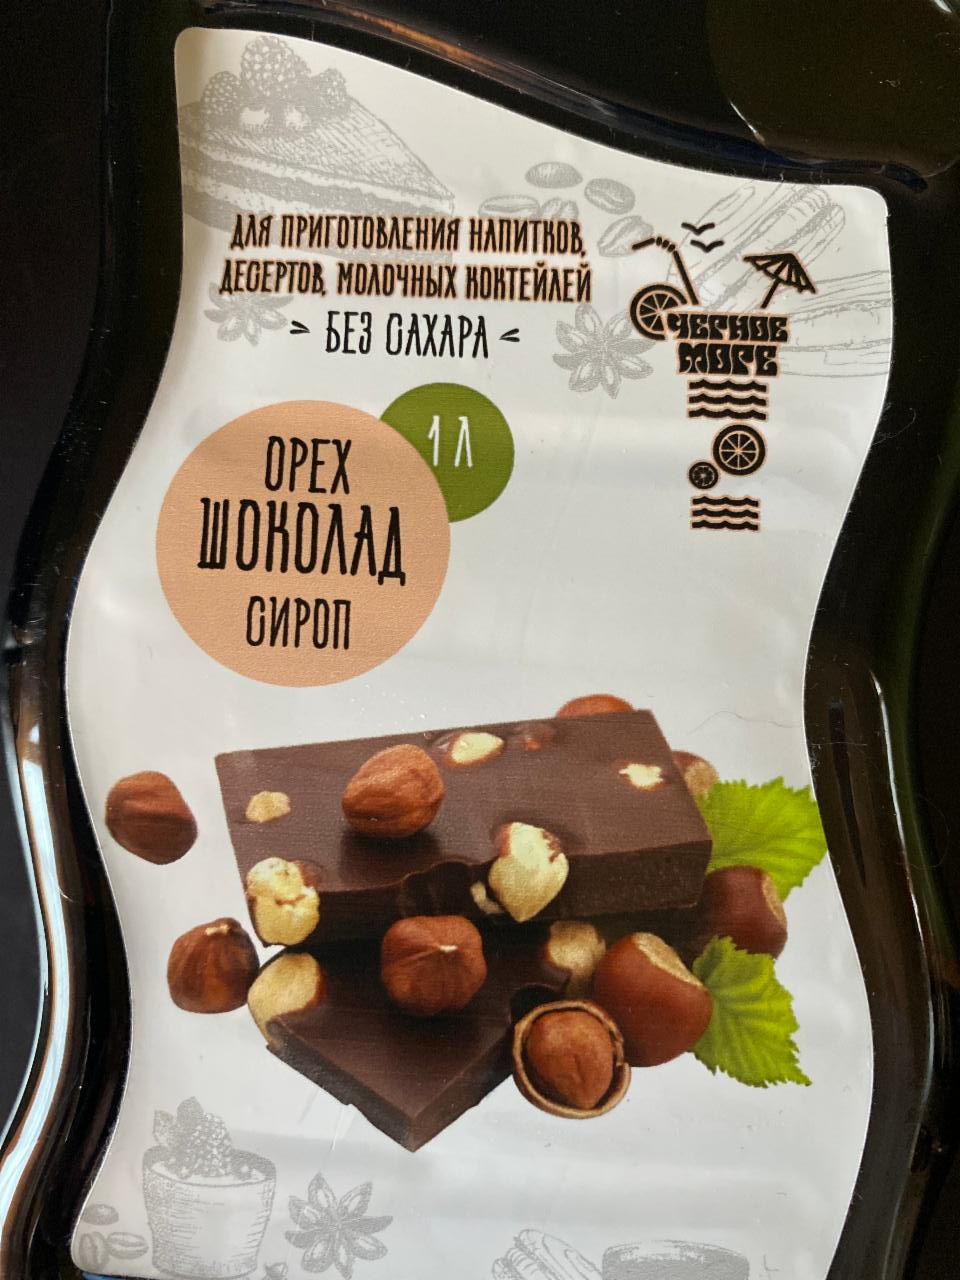 Фото - Сироп орех-шоколад Черное Море